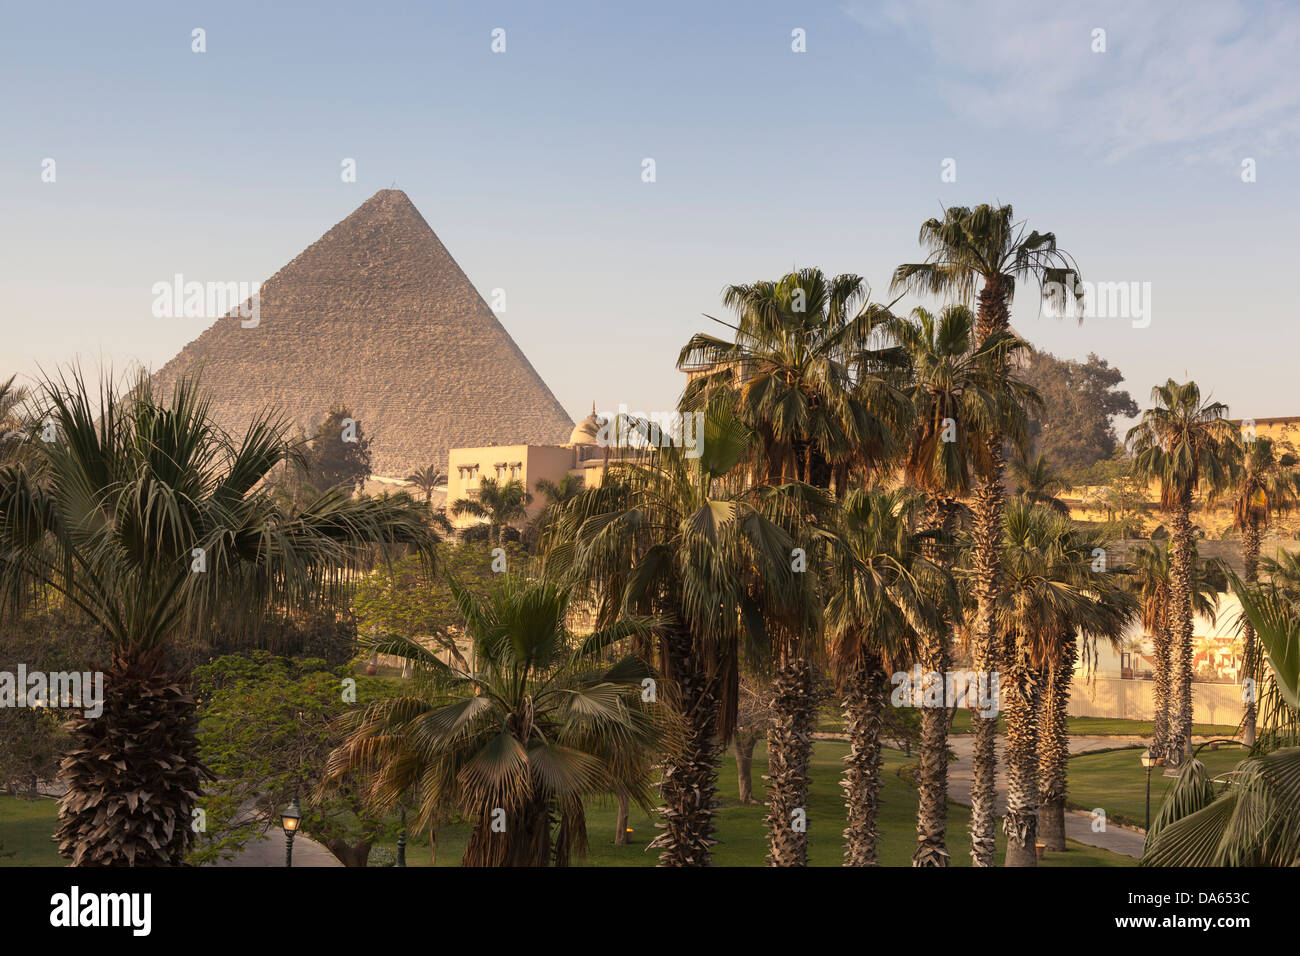 Grande pyramide de Gizeh, également connu sous le nom de pyramide de Chéops et la pyramide de Khéops, à Gizeh, Le Caire, Égypte, du Mena House Hotel Banque D'Images